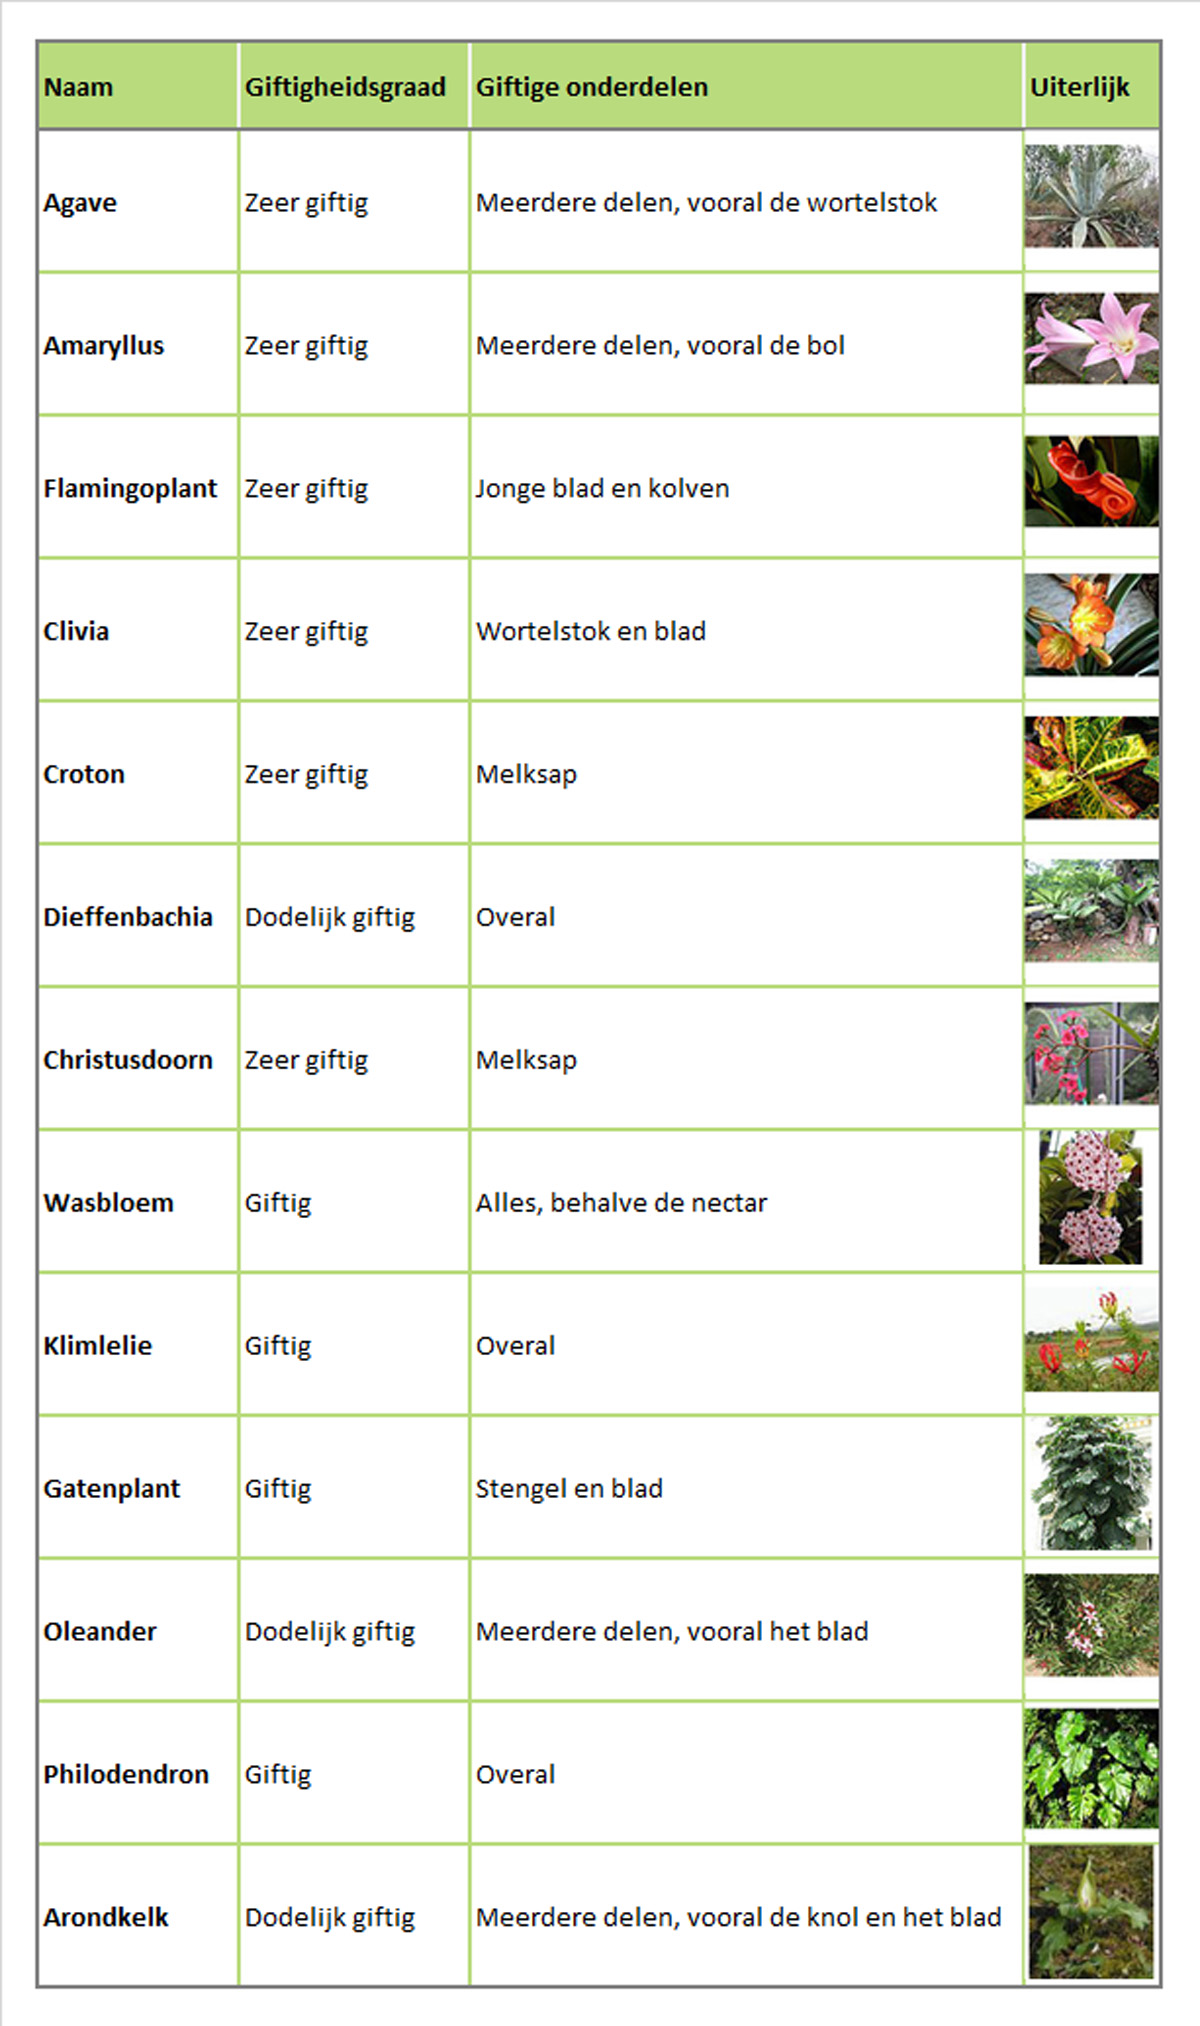 Giftige kamerplanten - Met welke planten moet je oppassen?